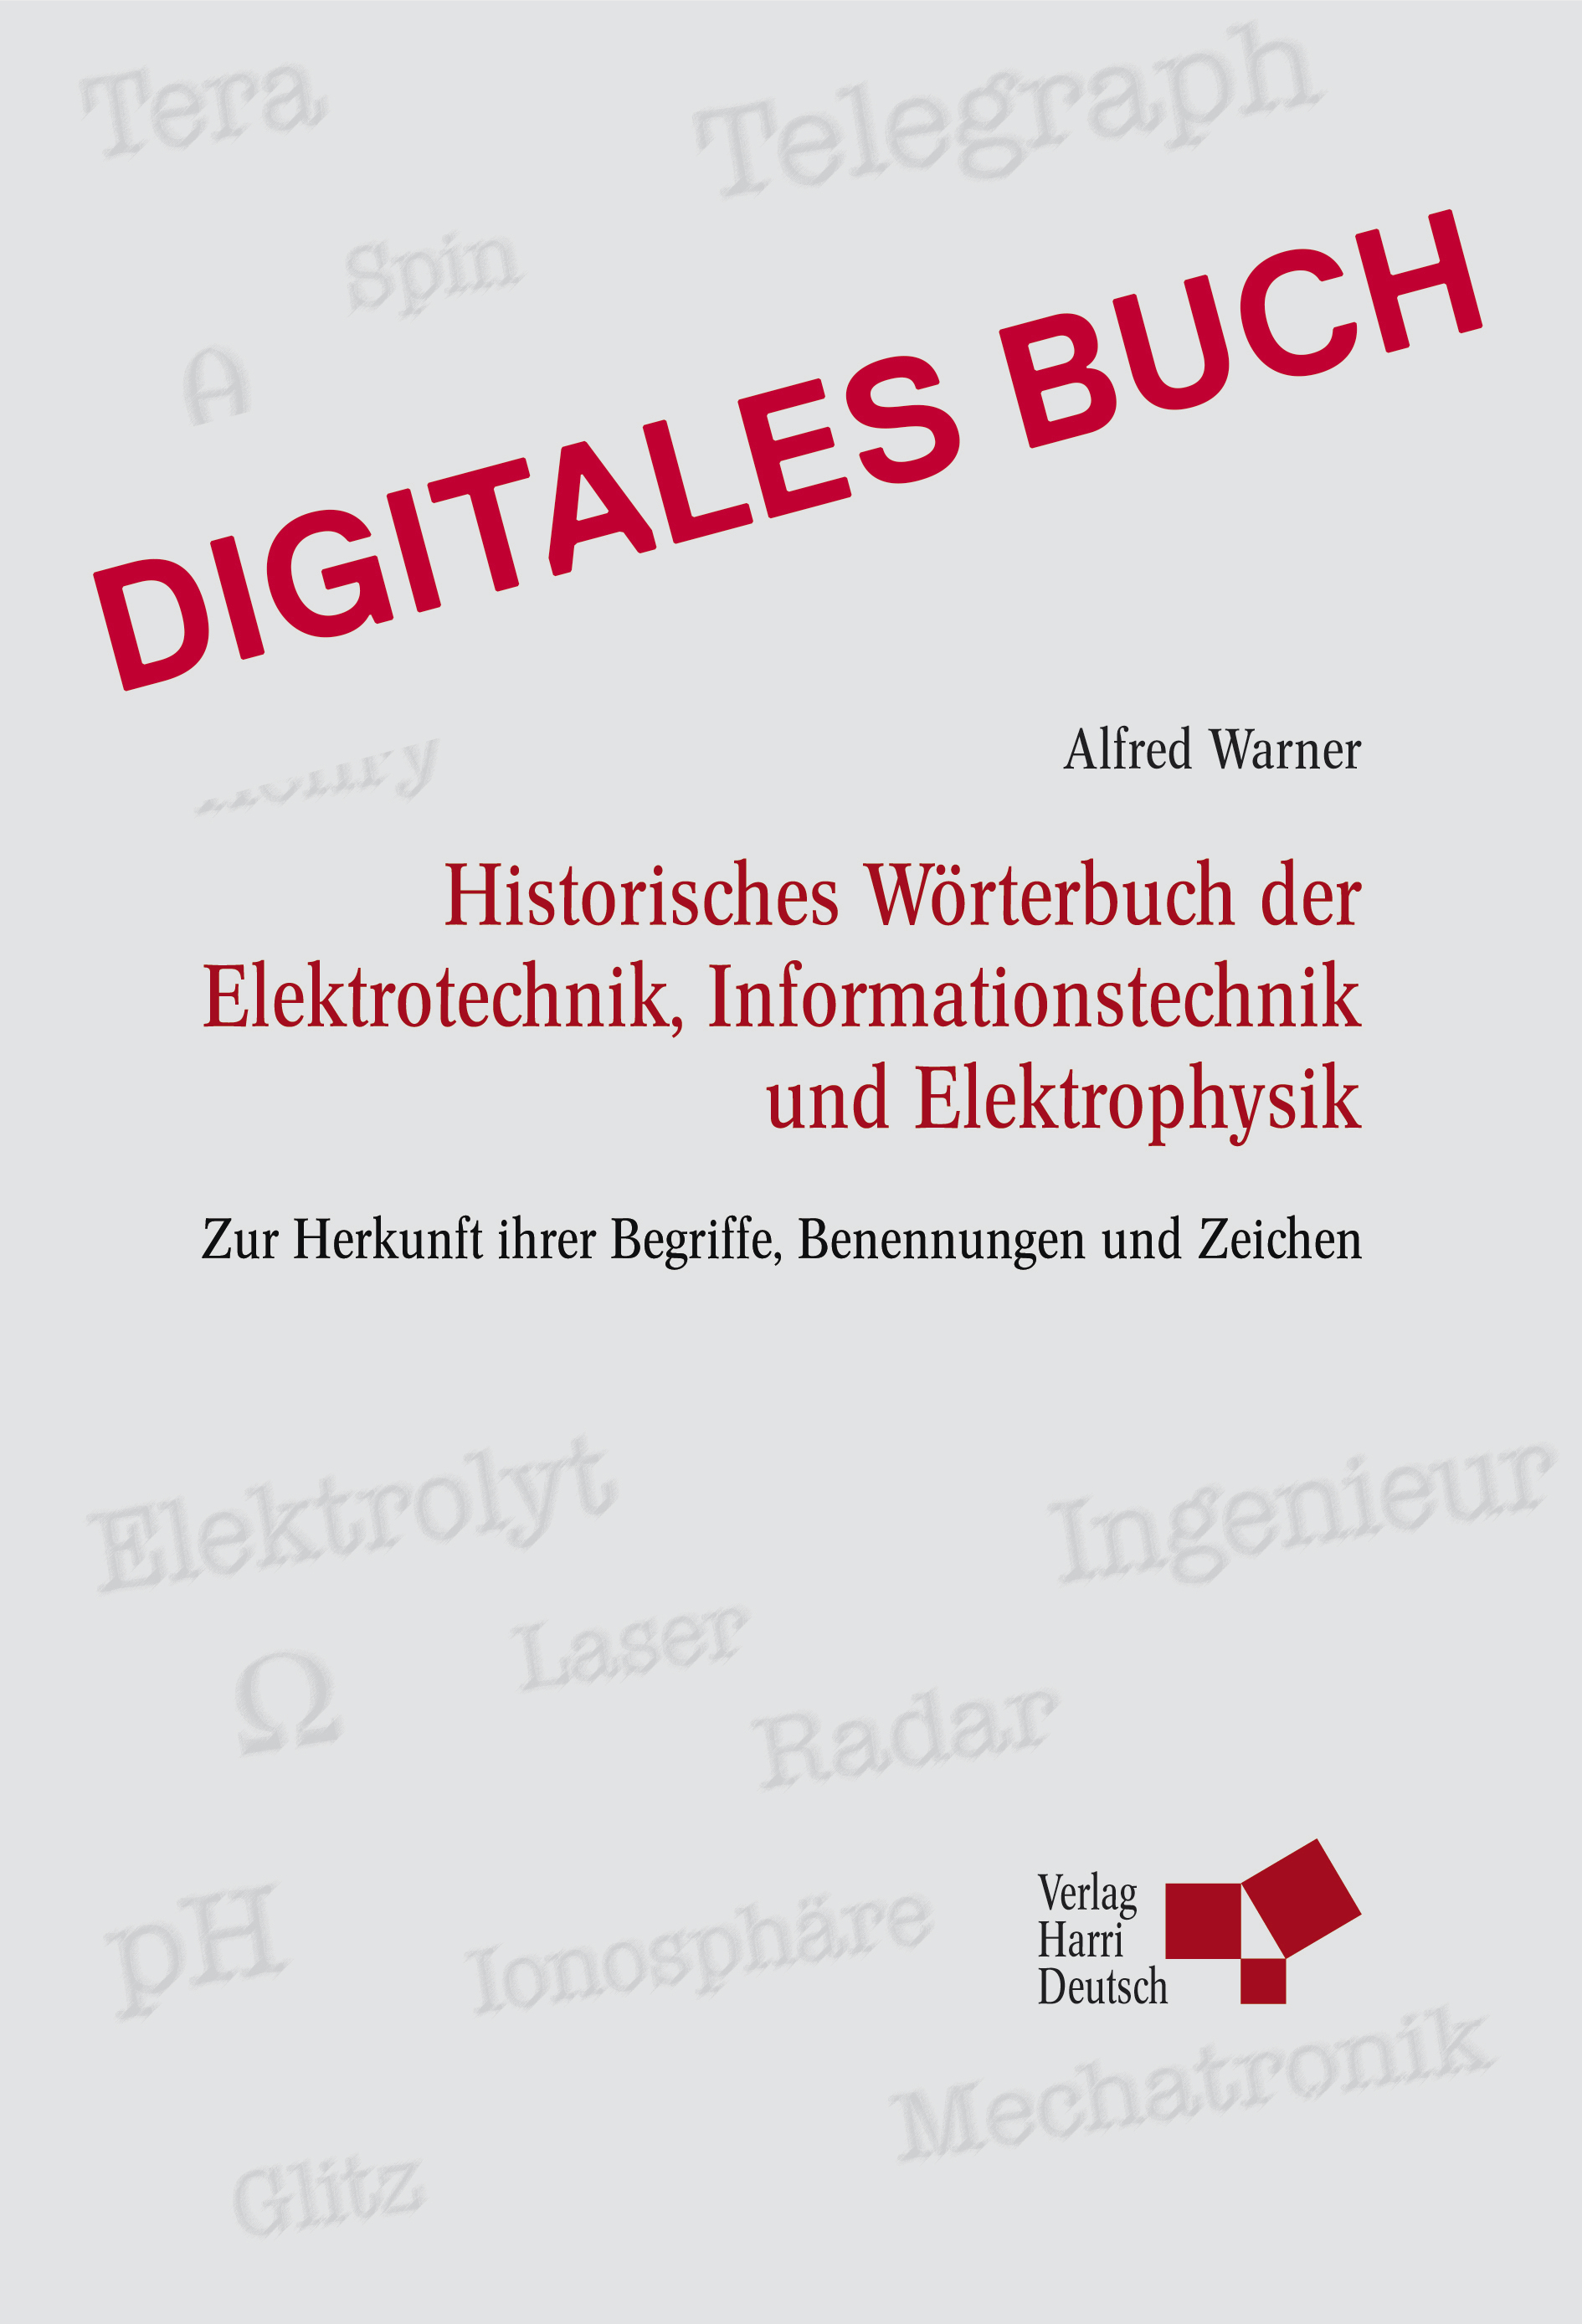 Historisches Wörterbuch der Elektrotechnik - Digitales Buch